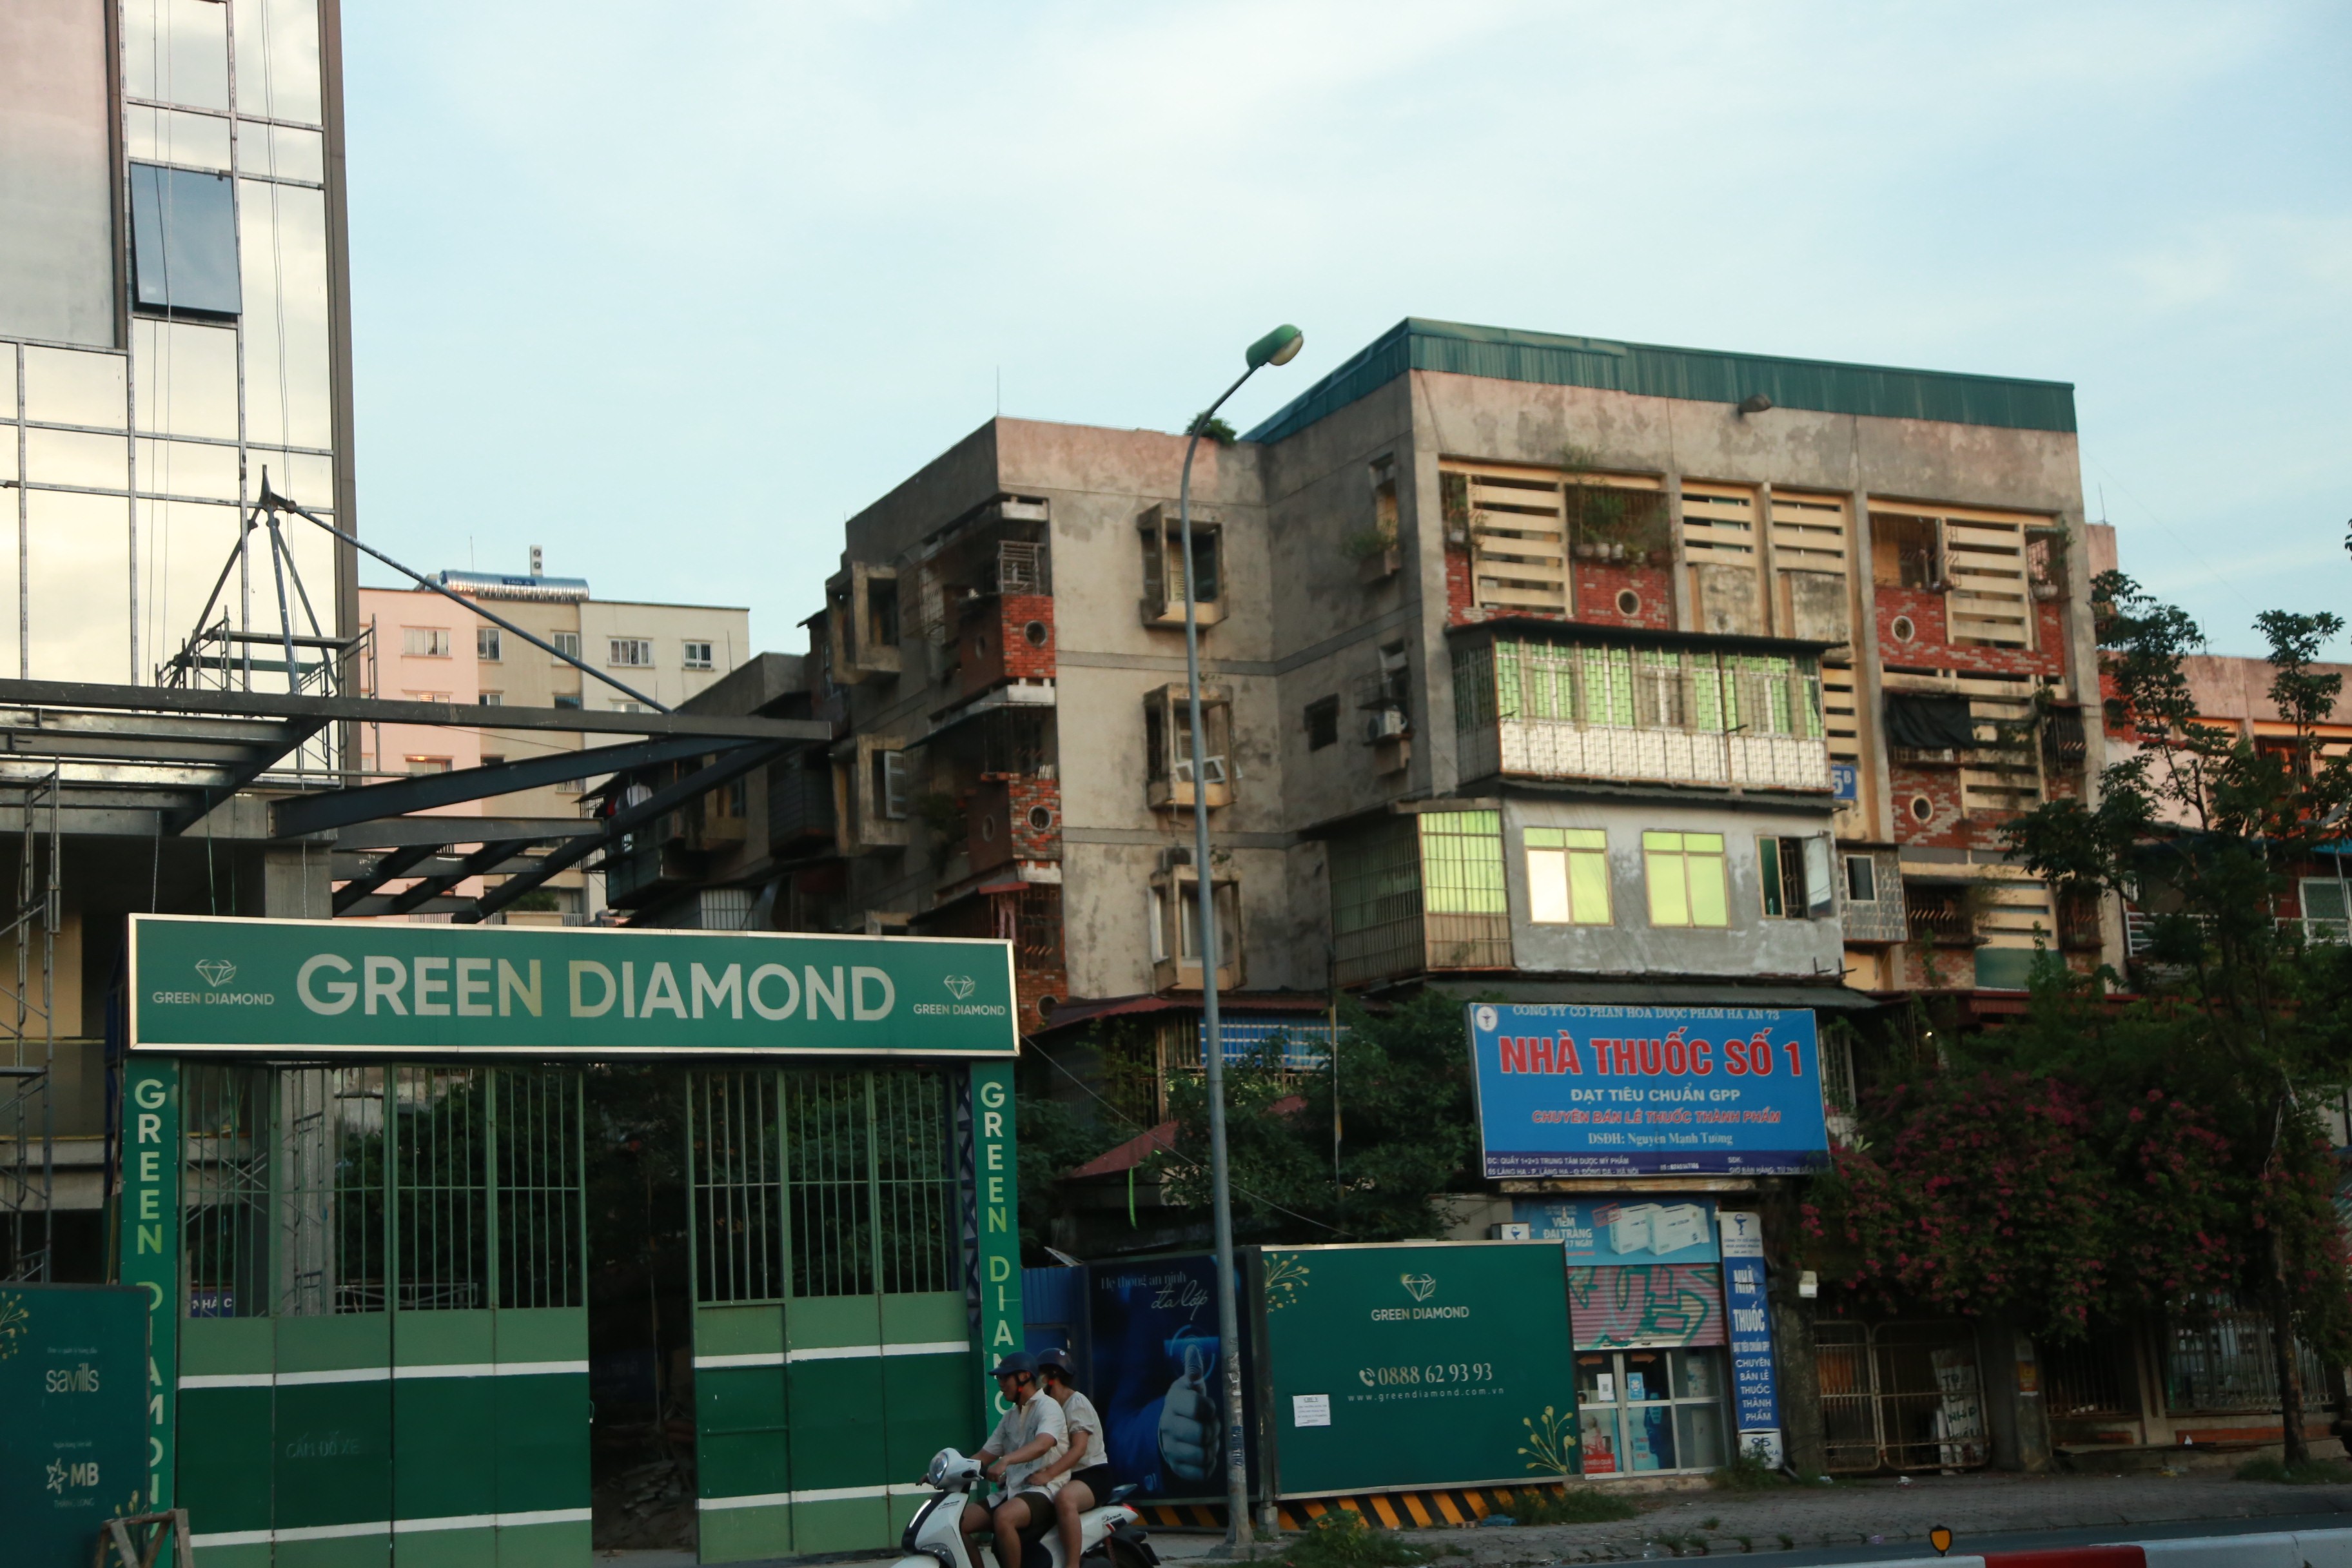 
Dự án Green Diamond trên đường Láng Hạ nằm trong số ít những dự án chung cư mới được xây dựng tại khu vực trung tâm.&nbsp;Nhu cầu nhà ở lớn, nguồn cung ít, đặc biệt là ở trung tâm, thế nên dễ hiểu vì sao các dự án này đều có giá bán cao, nằm ở phân khúc cao cấp. Dự án Green Diamond có mức giá bán 80 triệu đồng/ 1 mét vuông. Mức giá này là minh chứng cho thấy bất động sản nhà ở tại Hà Nội "nóng" đến như thế nào.
